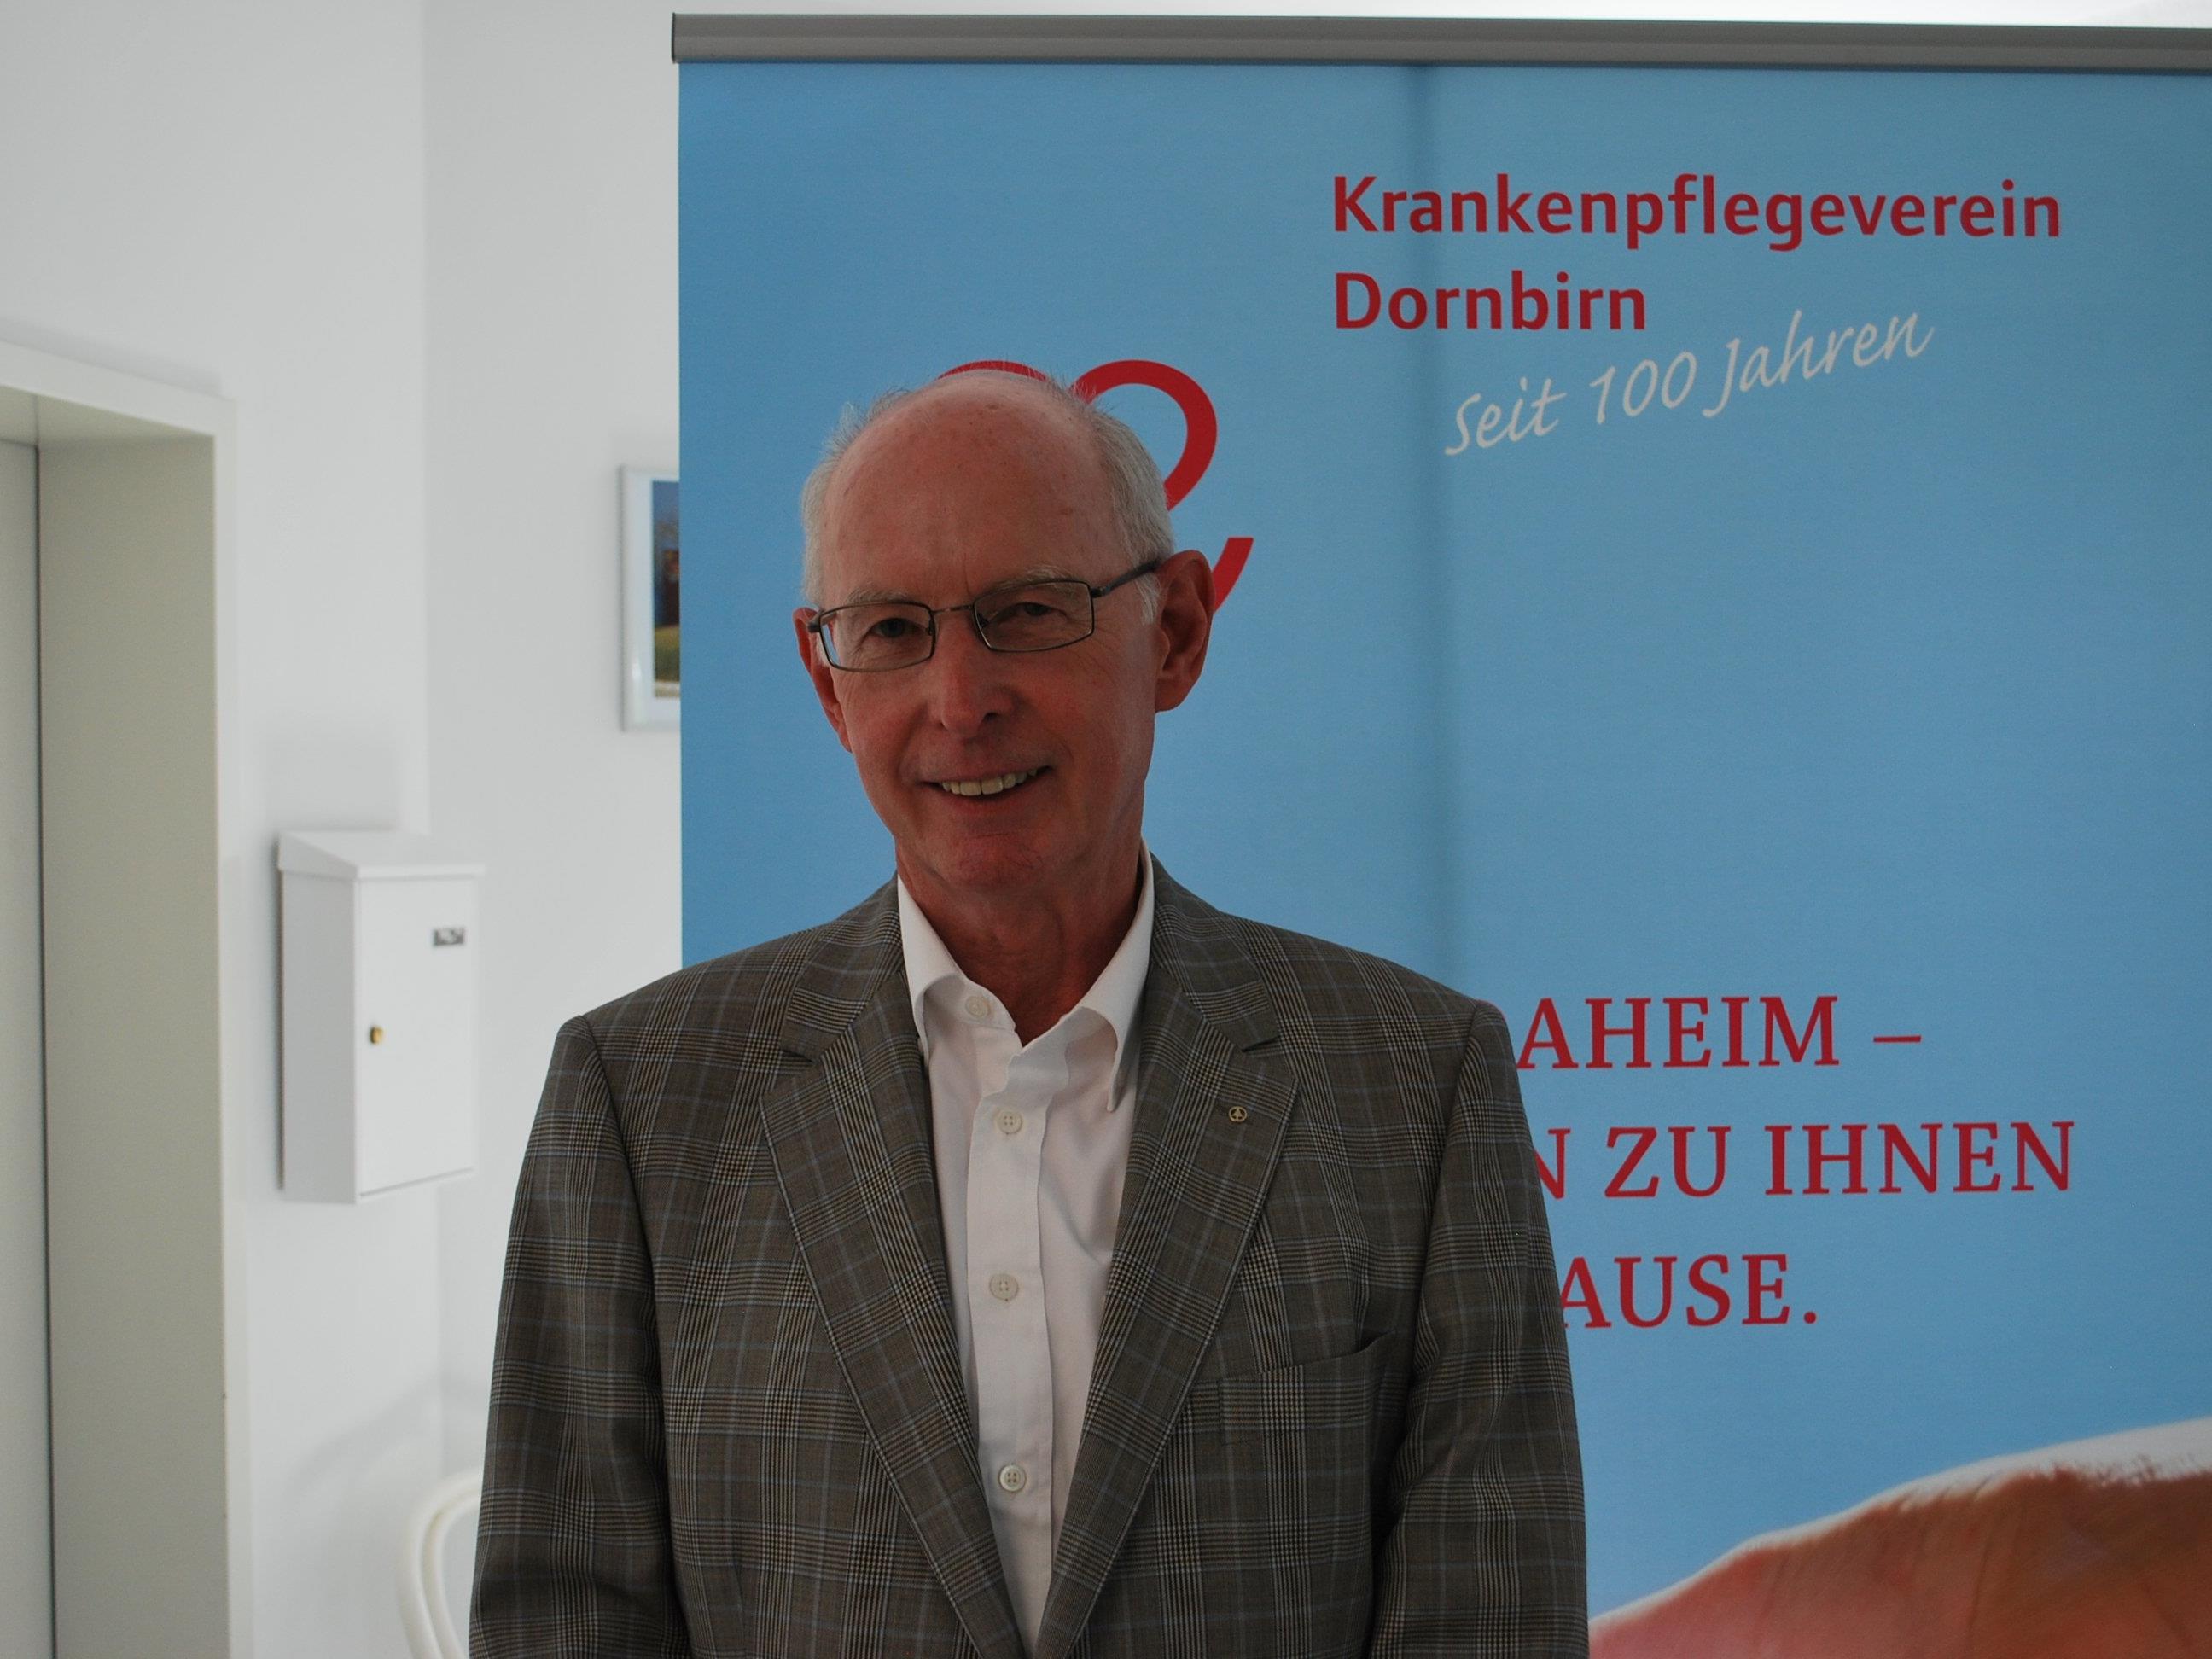 Heinz Wohlgenannt, Obmann des Krankenpflegevereins Dornbirn, lädt ein zur 103. Generalversammlung.